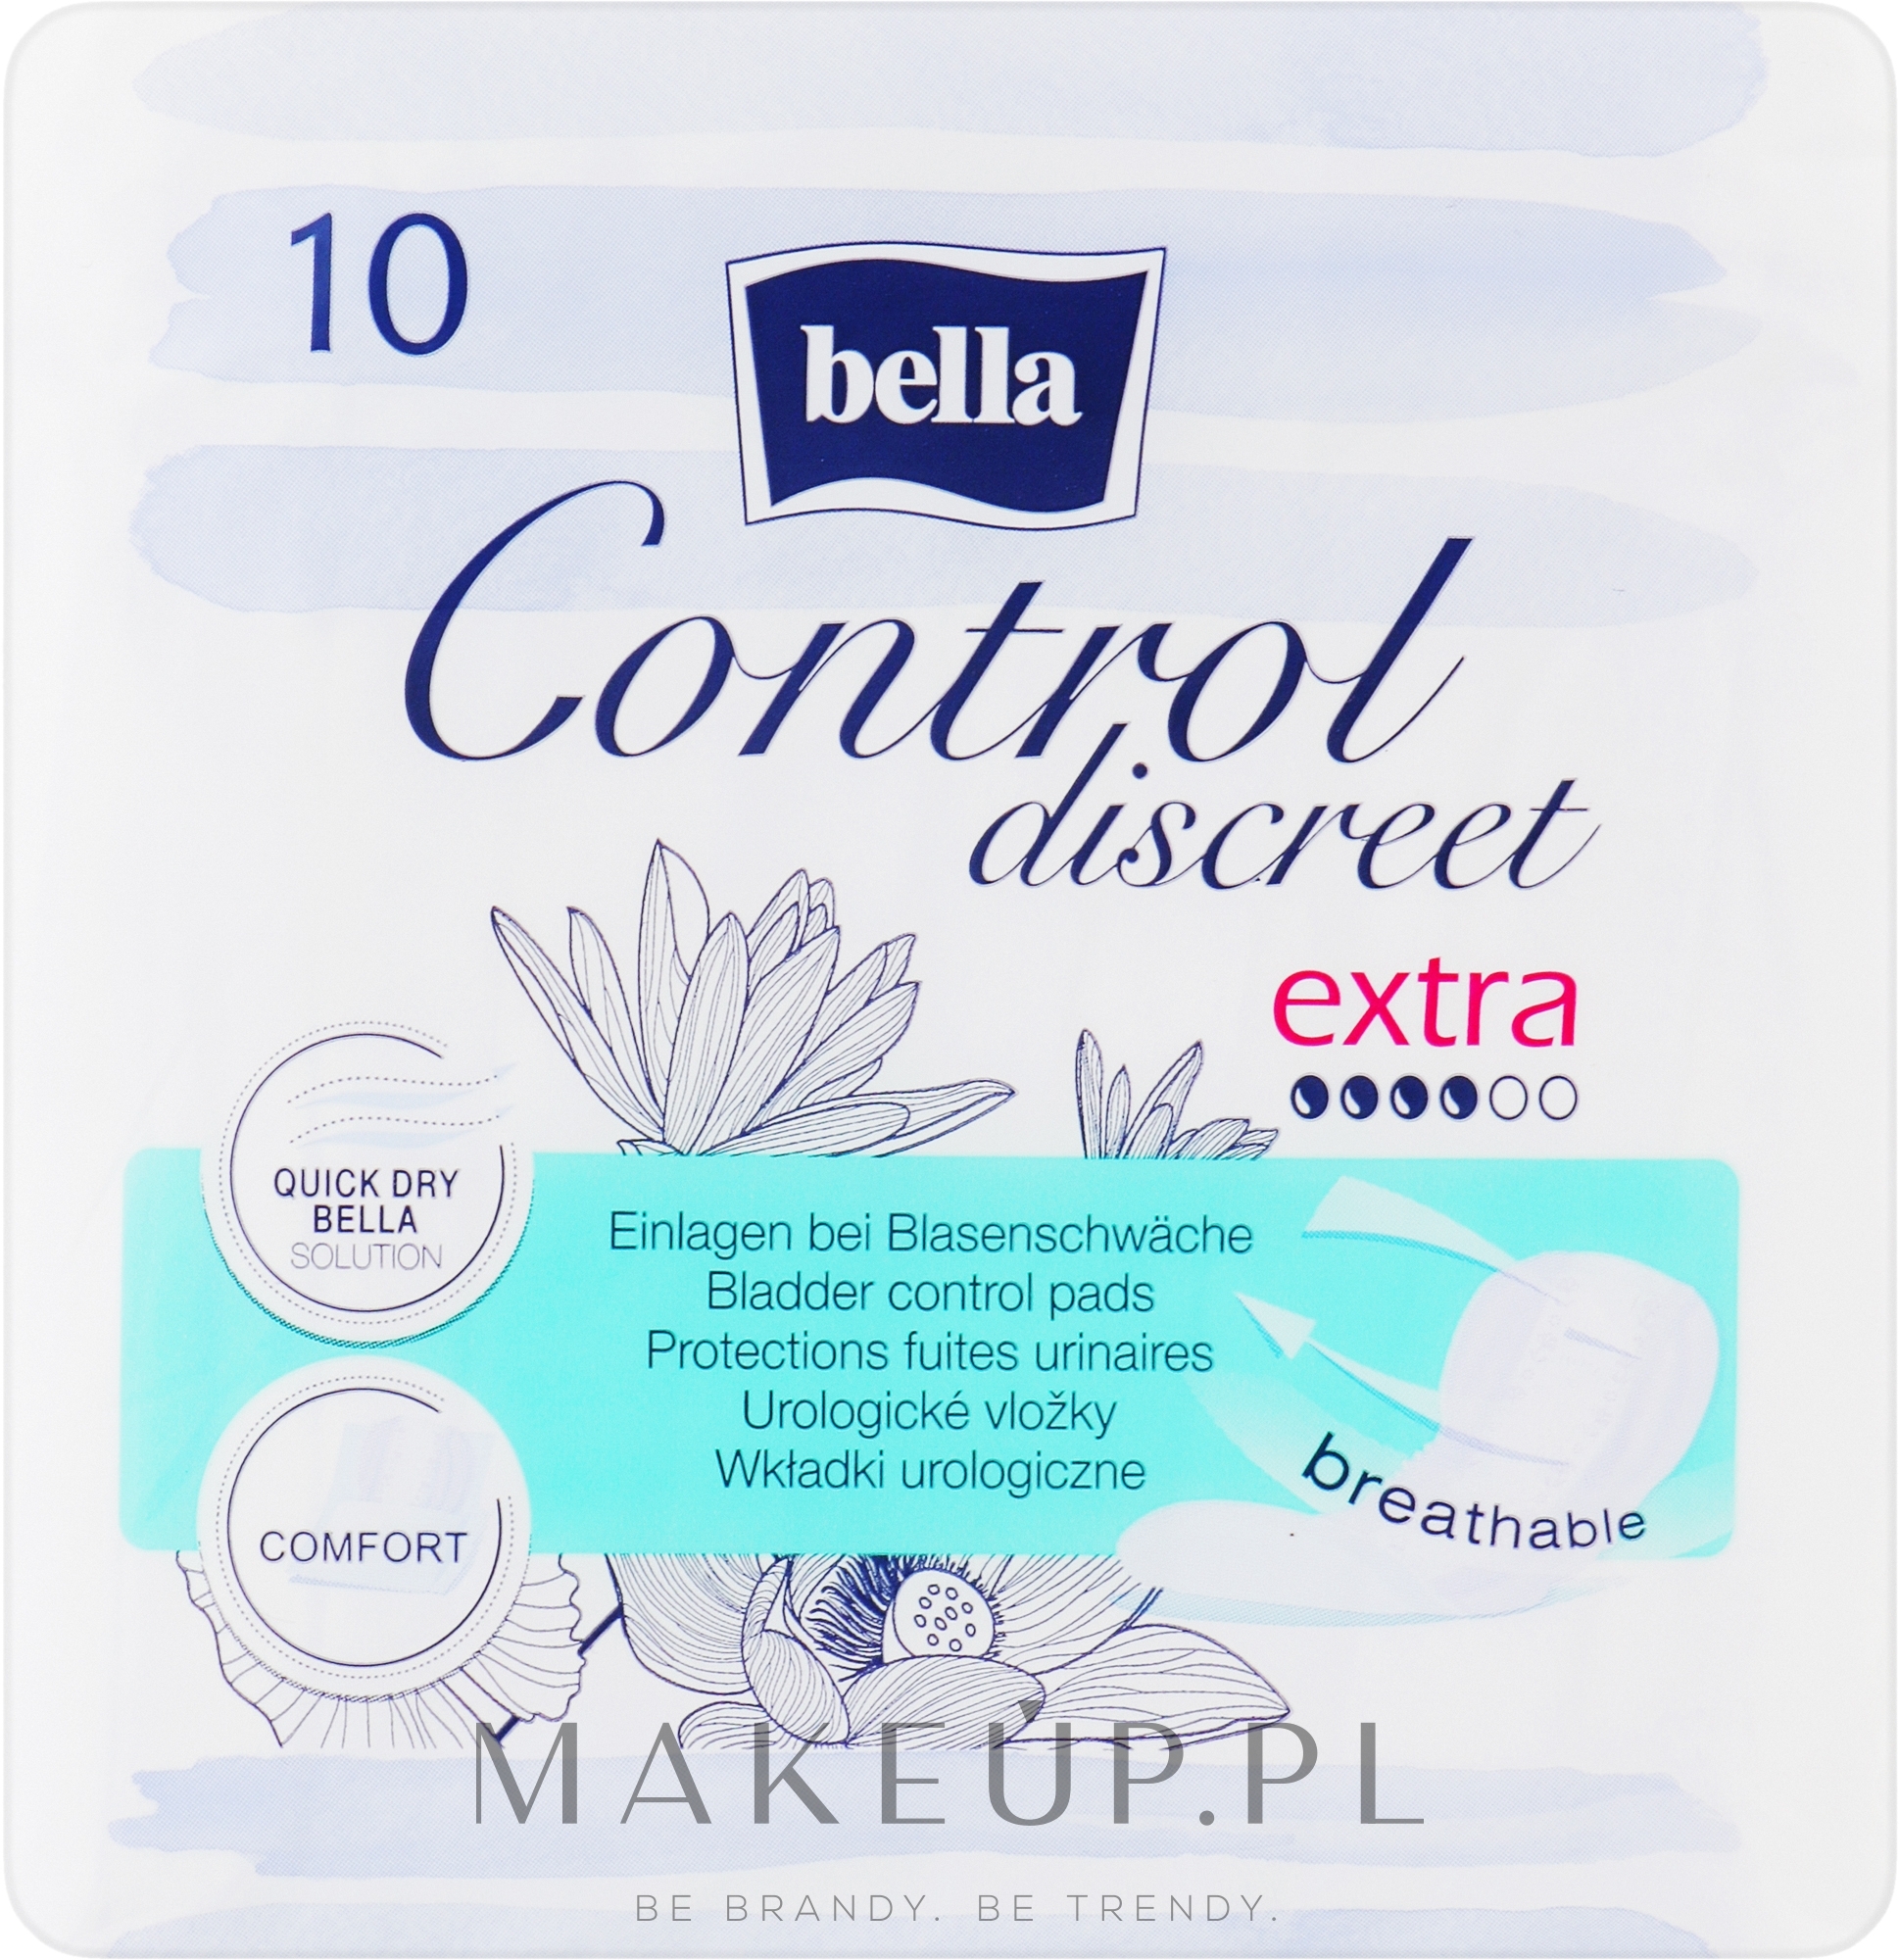 Wkładki urologiczne, 10 szt. - Bella Control Discreet Extra Bladder Control Pads — Zdjęcie 10 szt.